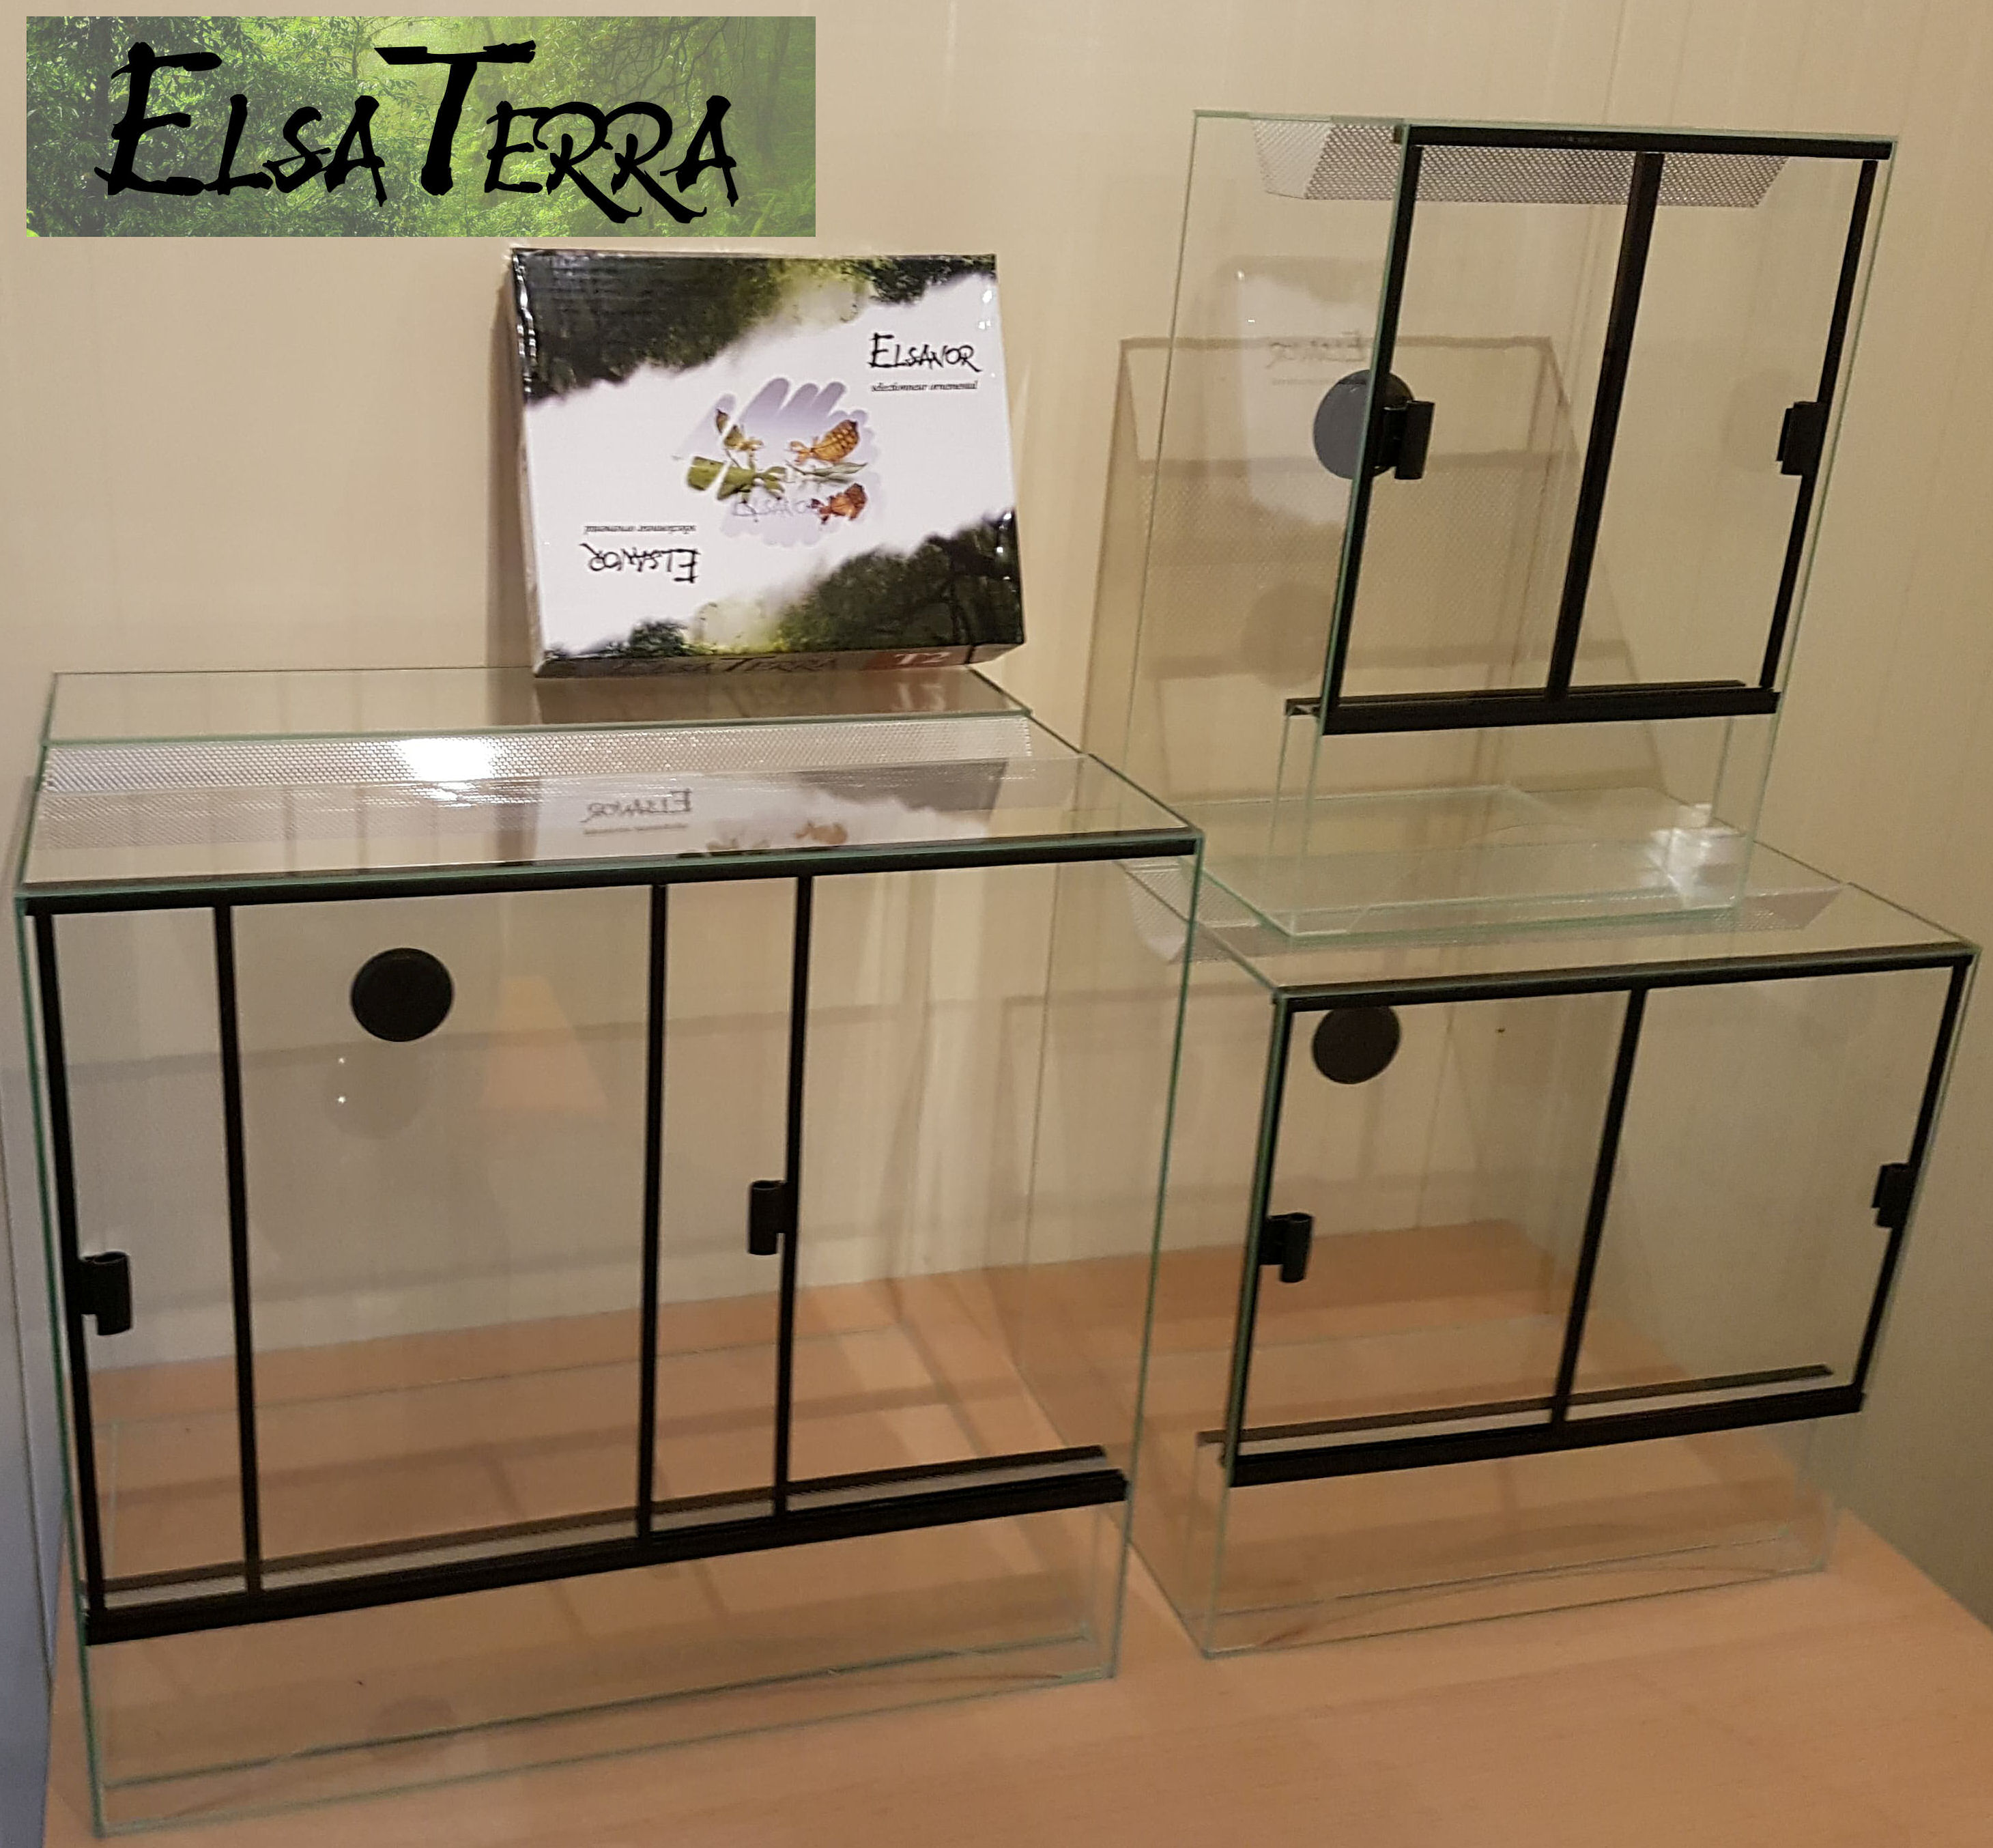 Elsanor gamme de terrarium ElsaTerra